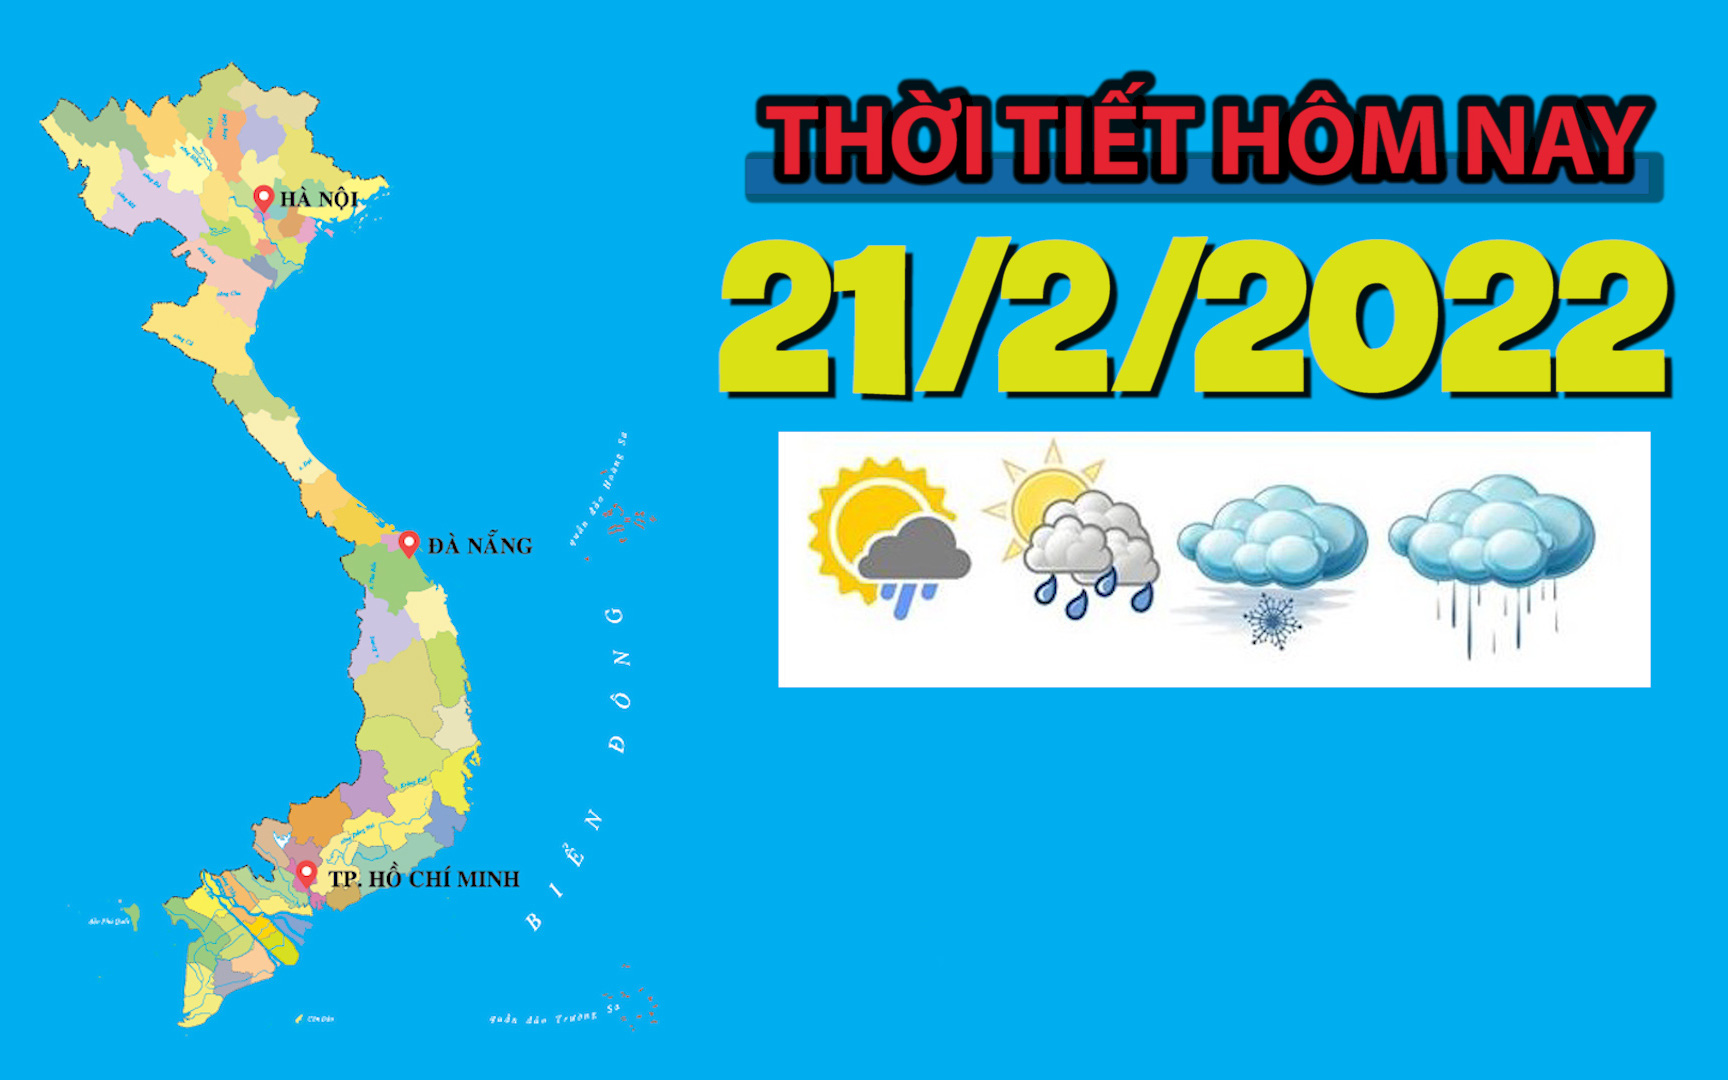 Thời tiết hôm nay 21/2: Hà Nội mưa rét, nhiệt độ thấp nhất là 7 độ C